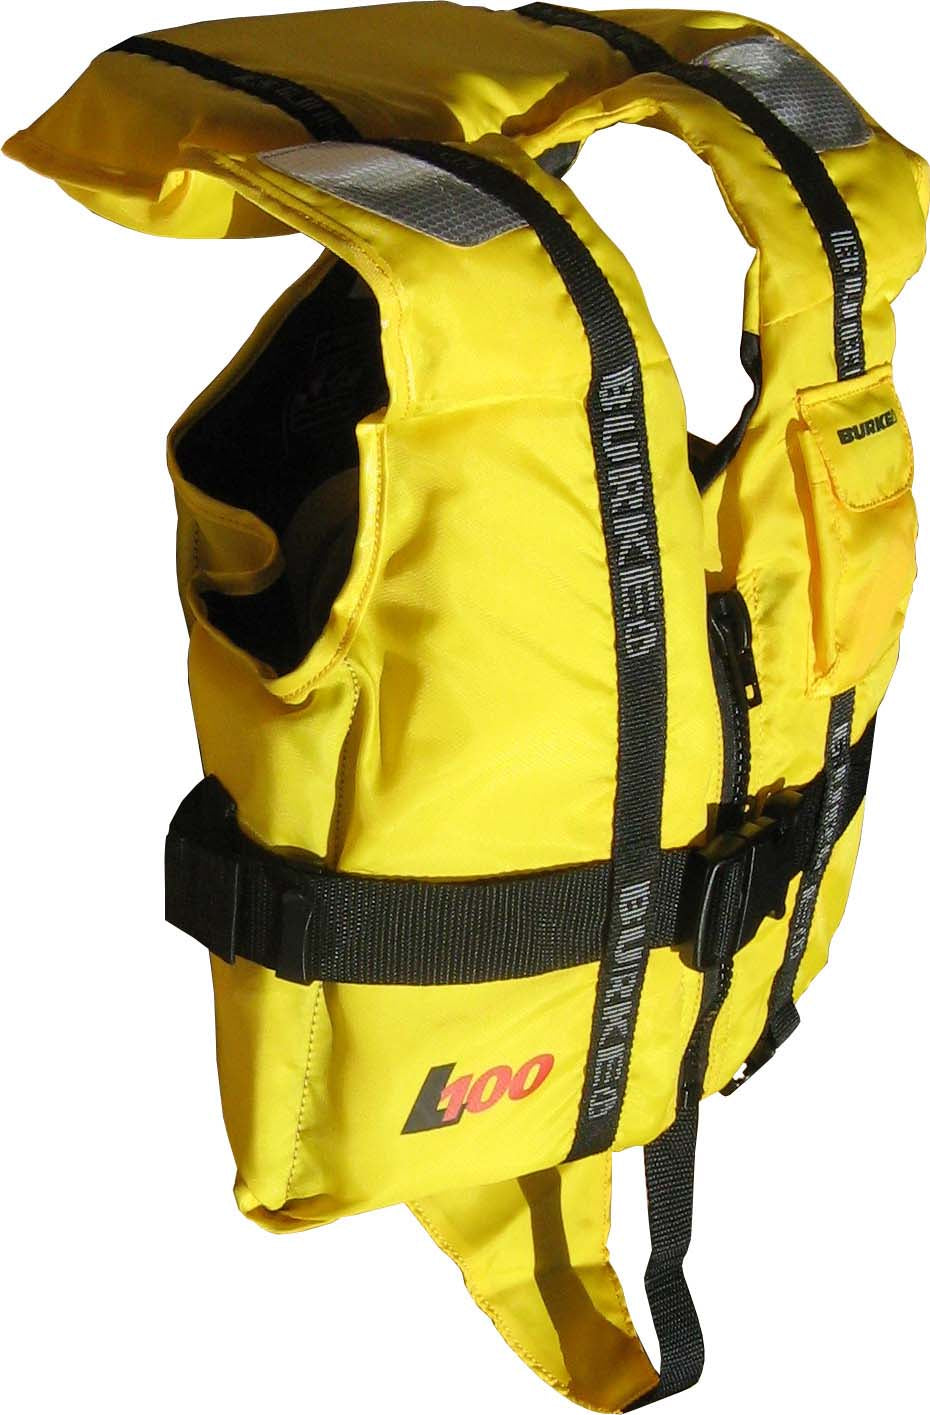 BURKE L100 Level 100 Childs Lifejacket